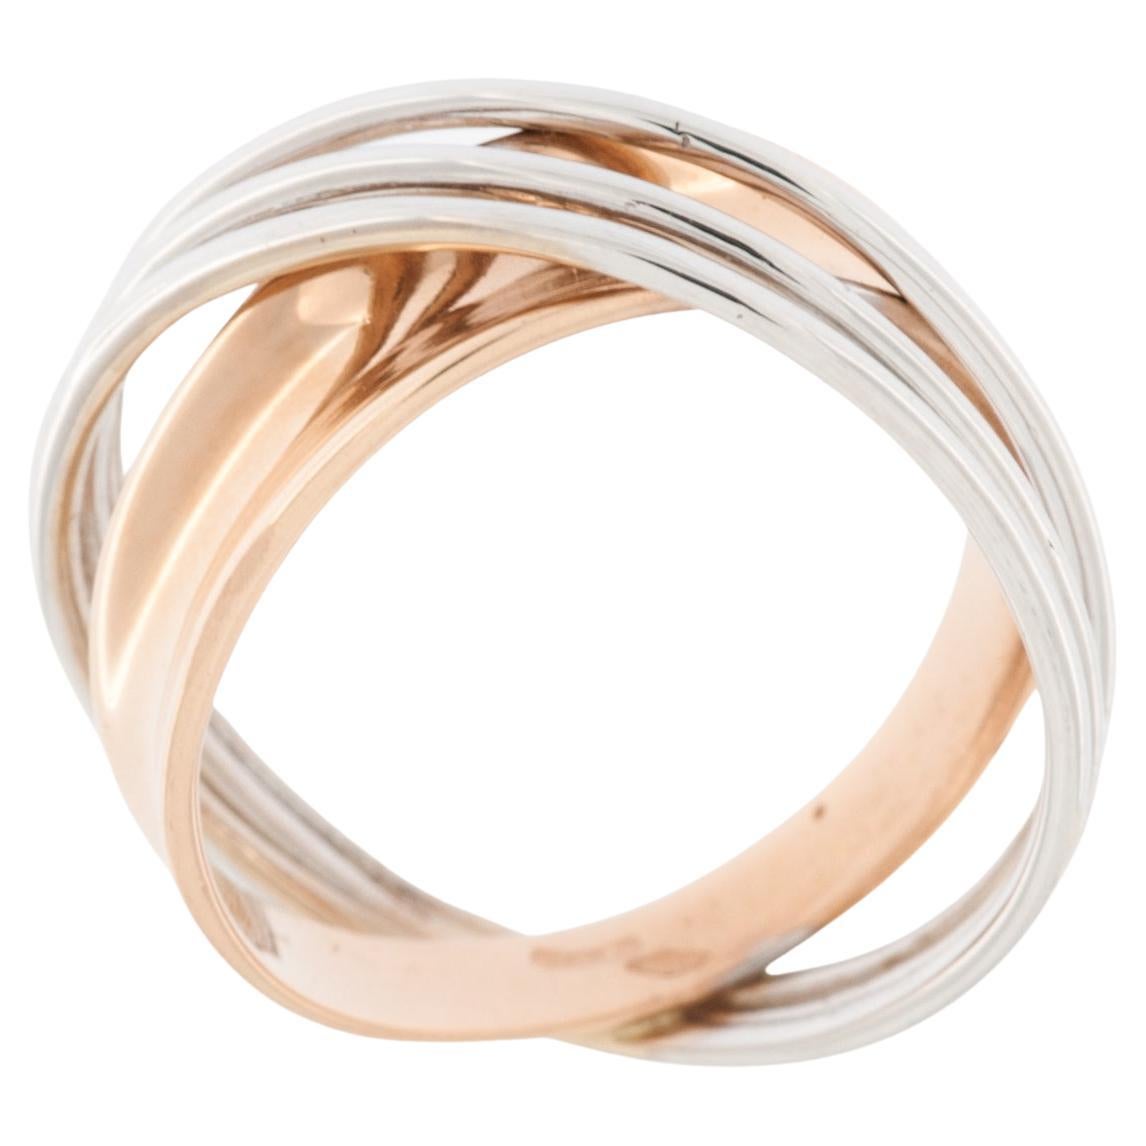 Italian Modern 18kt White and Rose Gold Ring